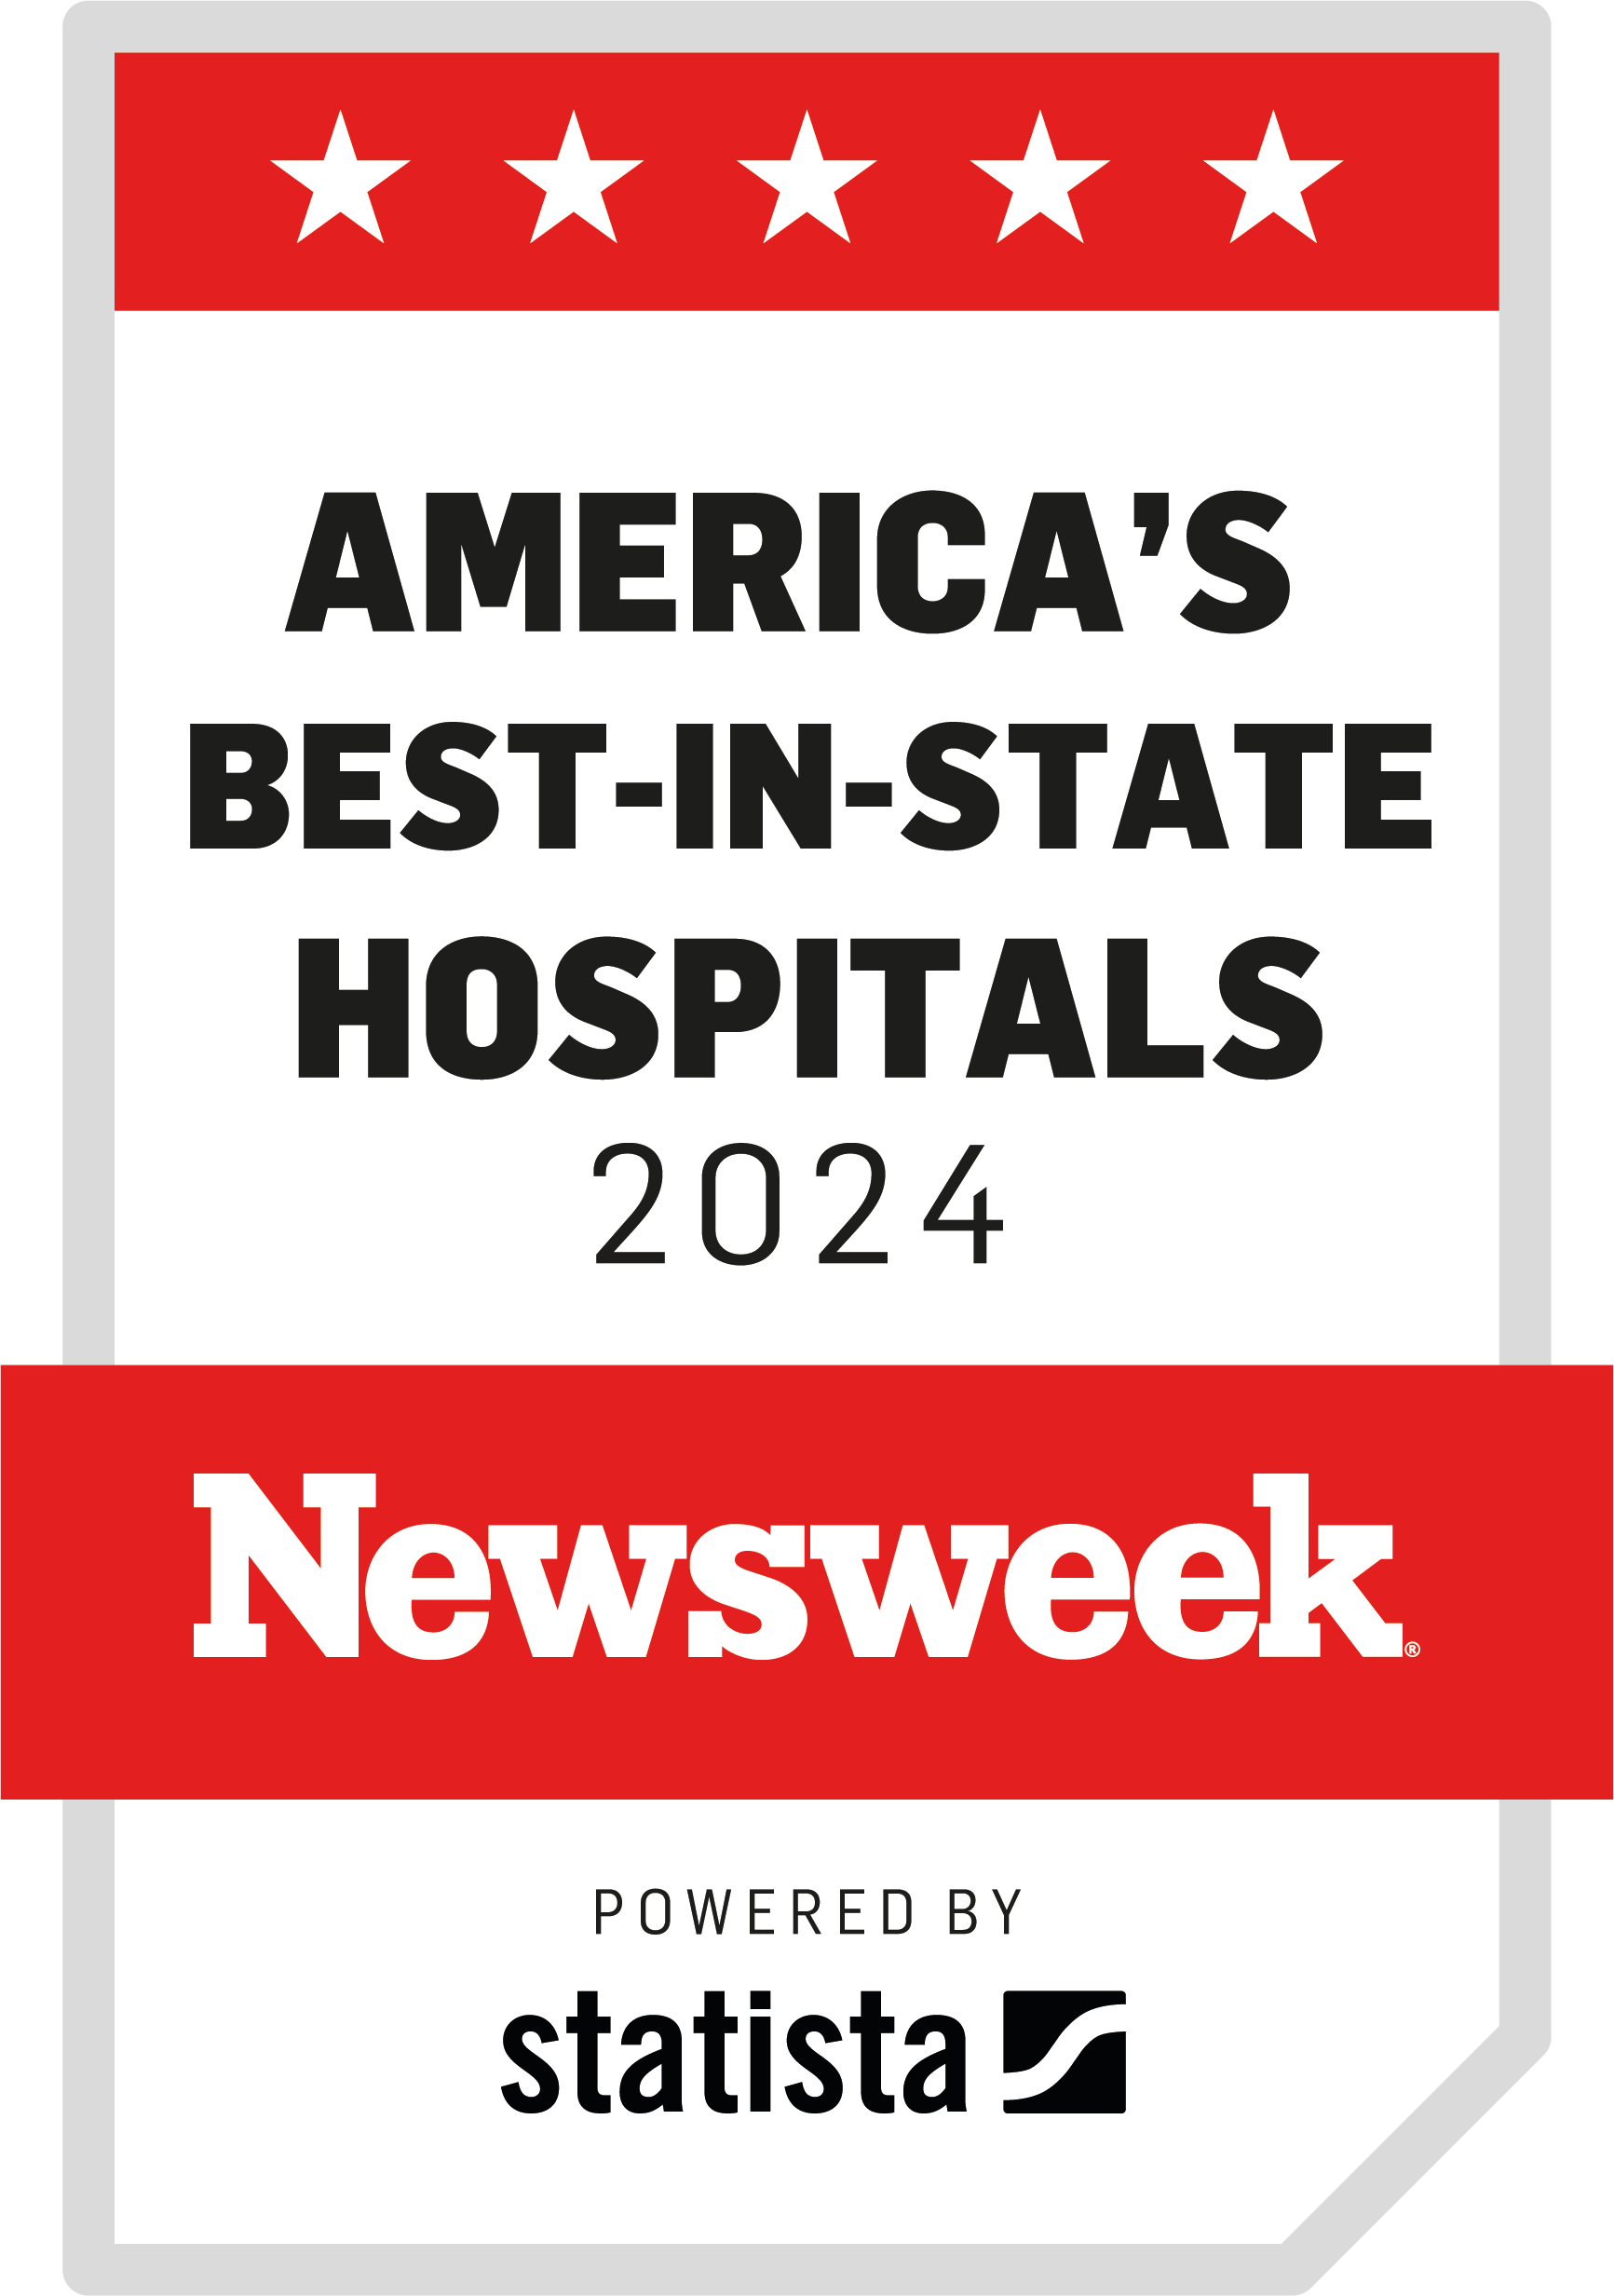 newsweek america's best-in-state- hospitals 2024 florida award badge